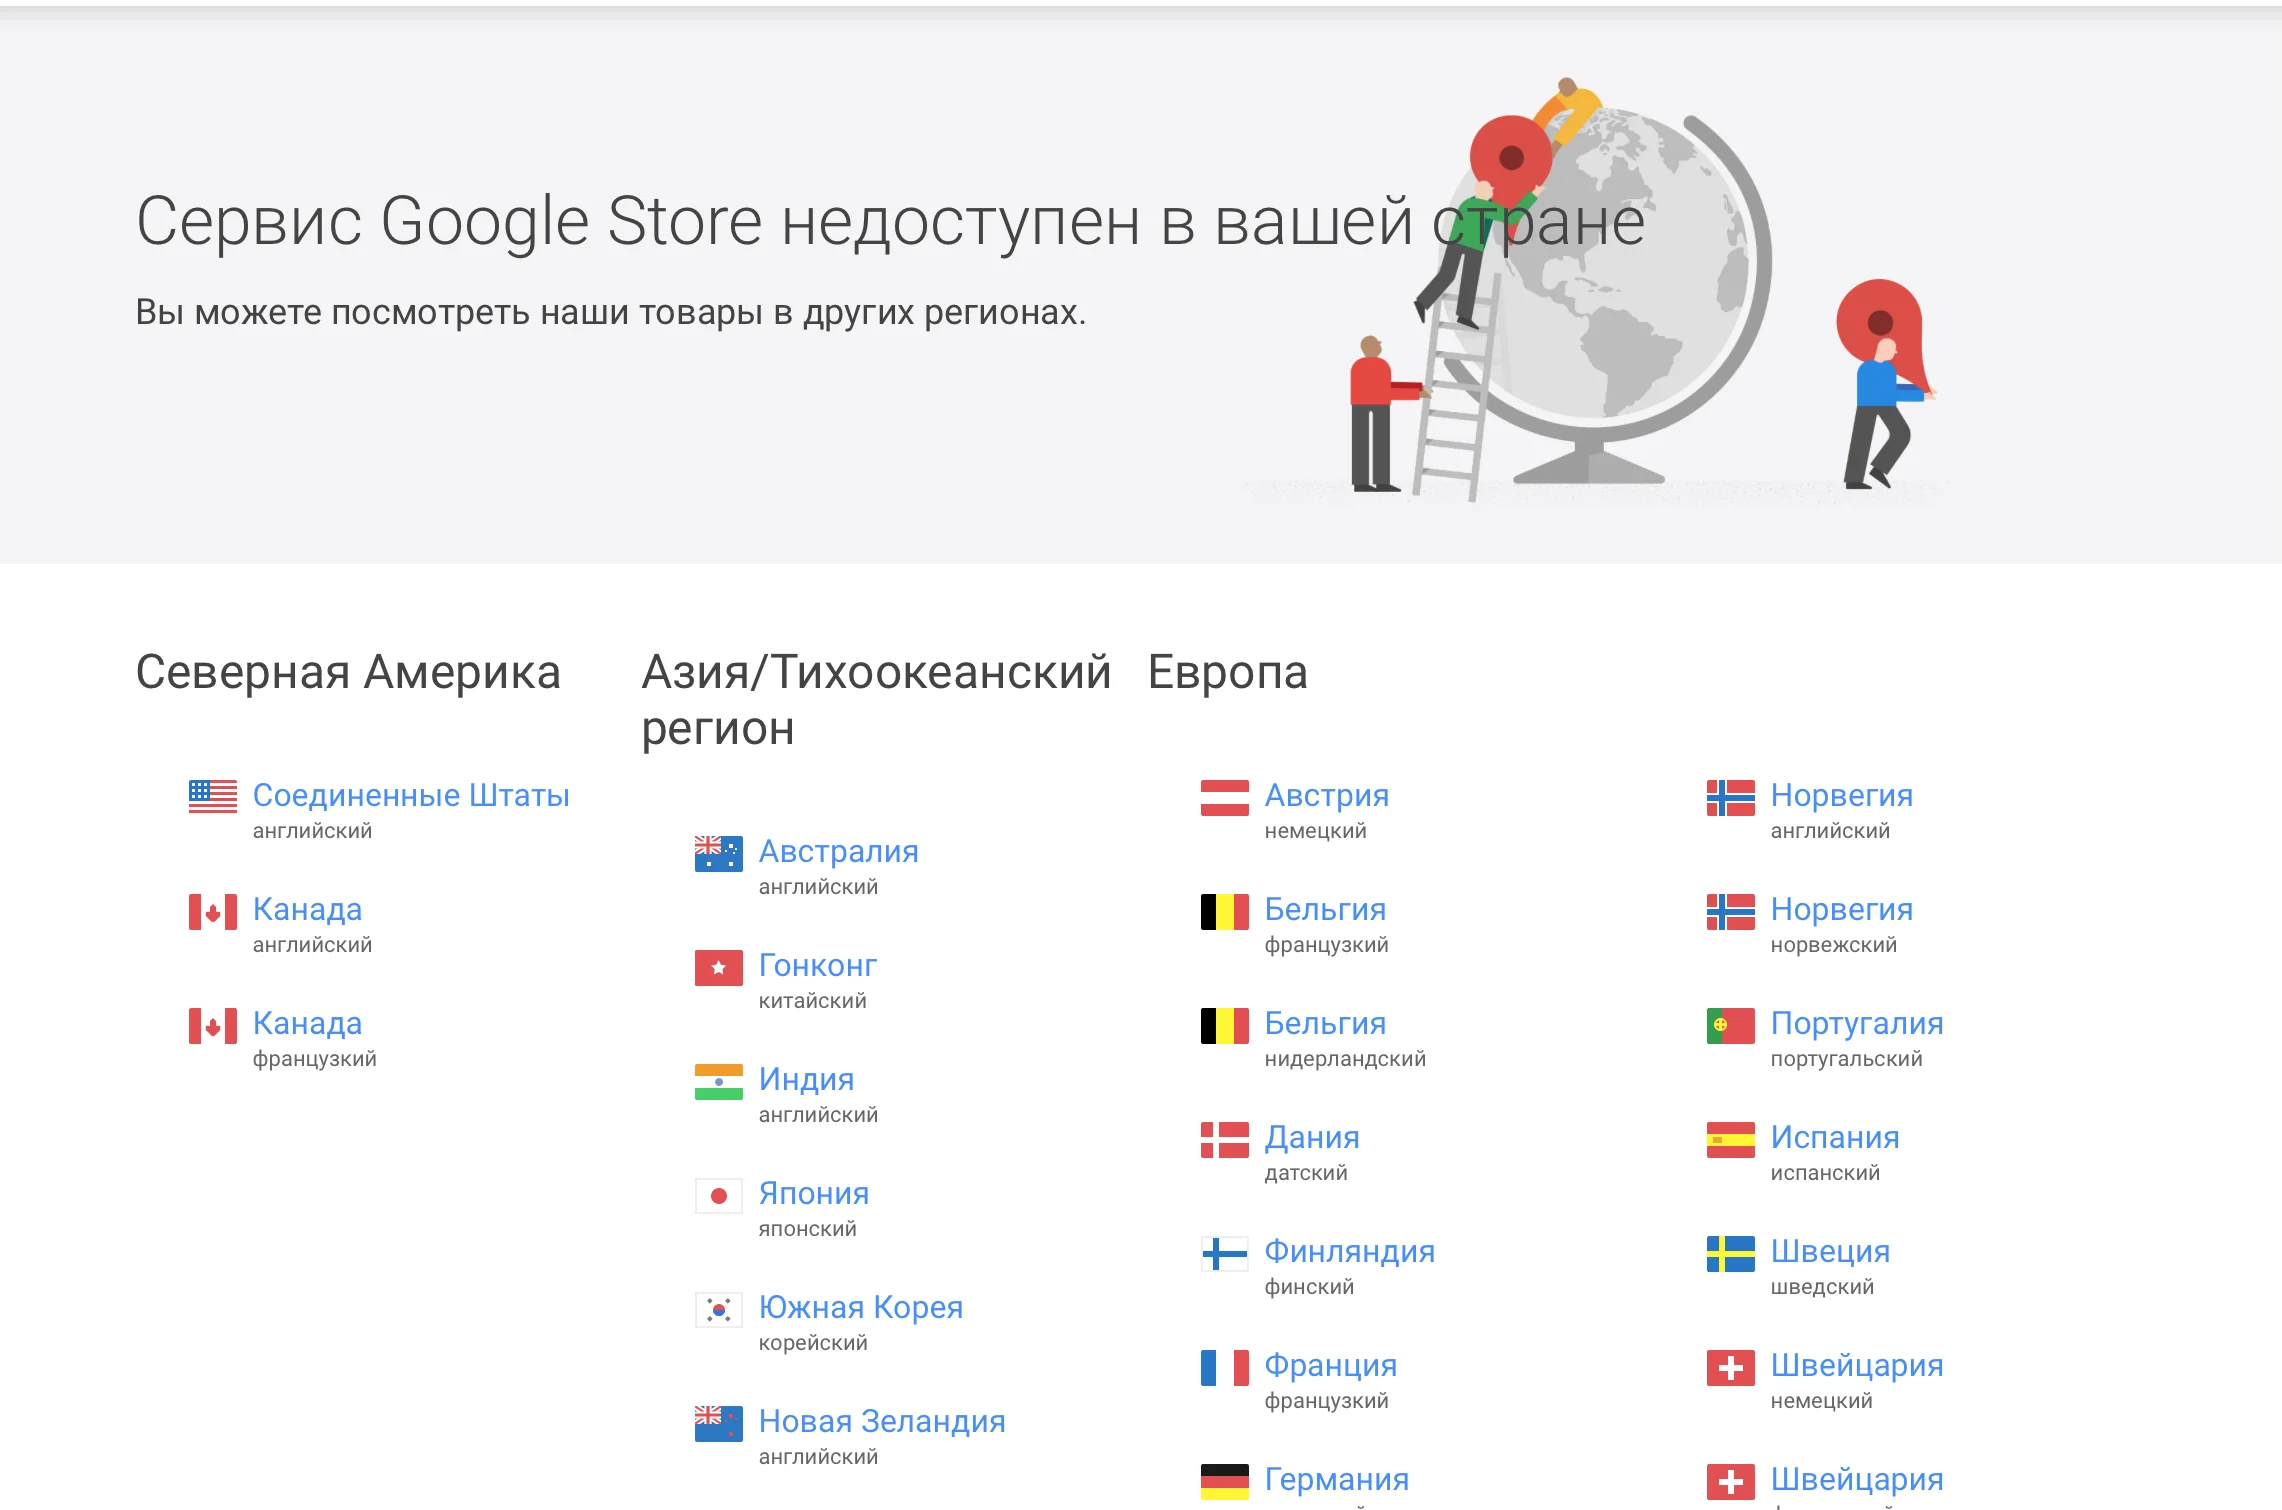 Заказать смартфоны и аксессуары Google в России стало проще  - фото 3